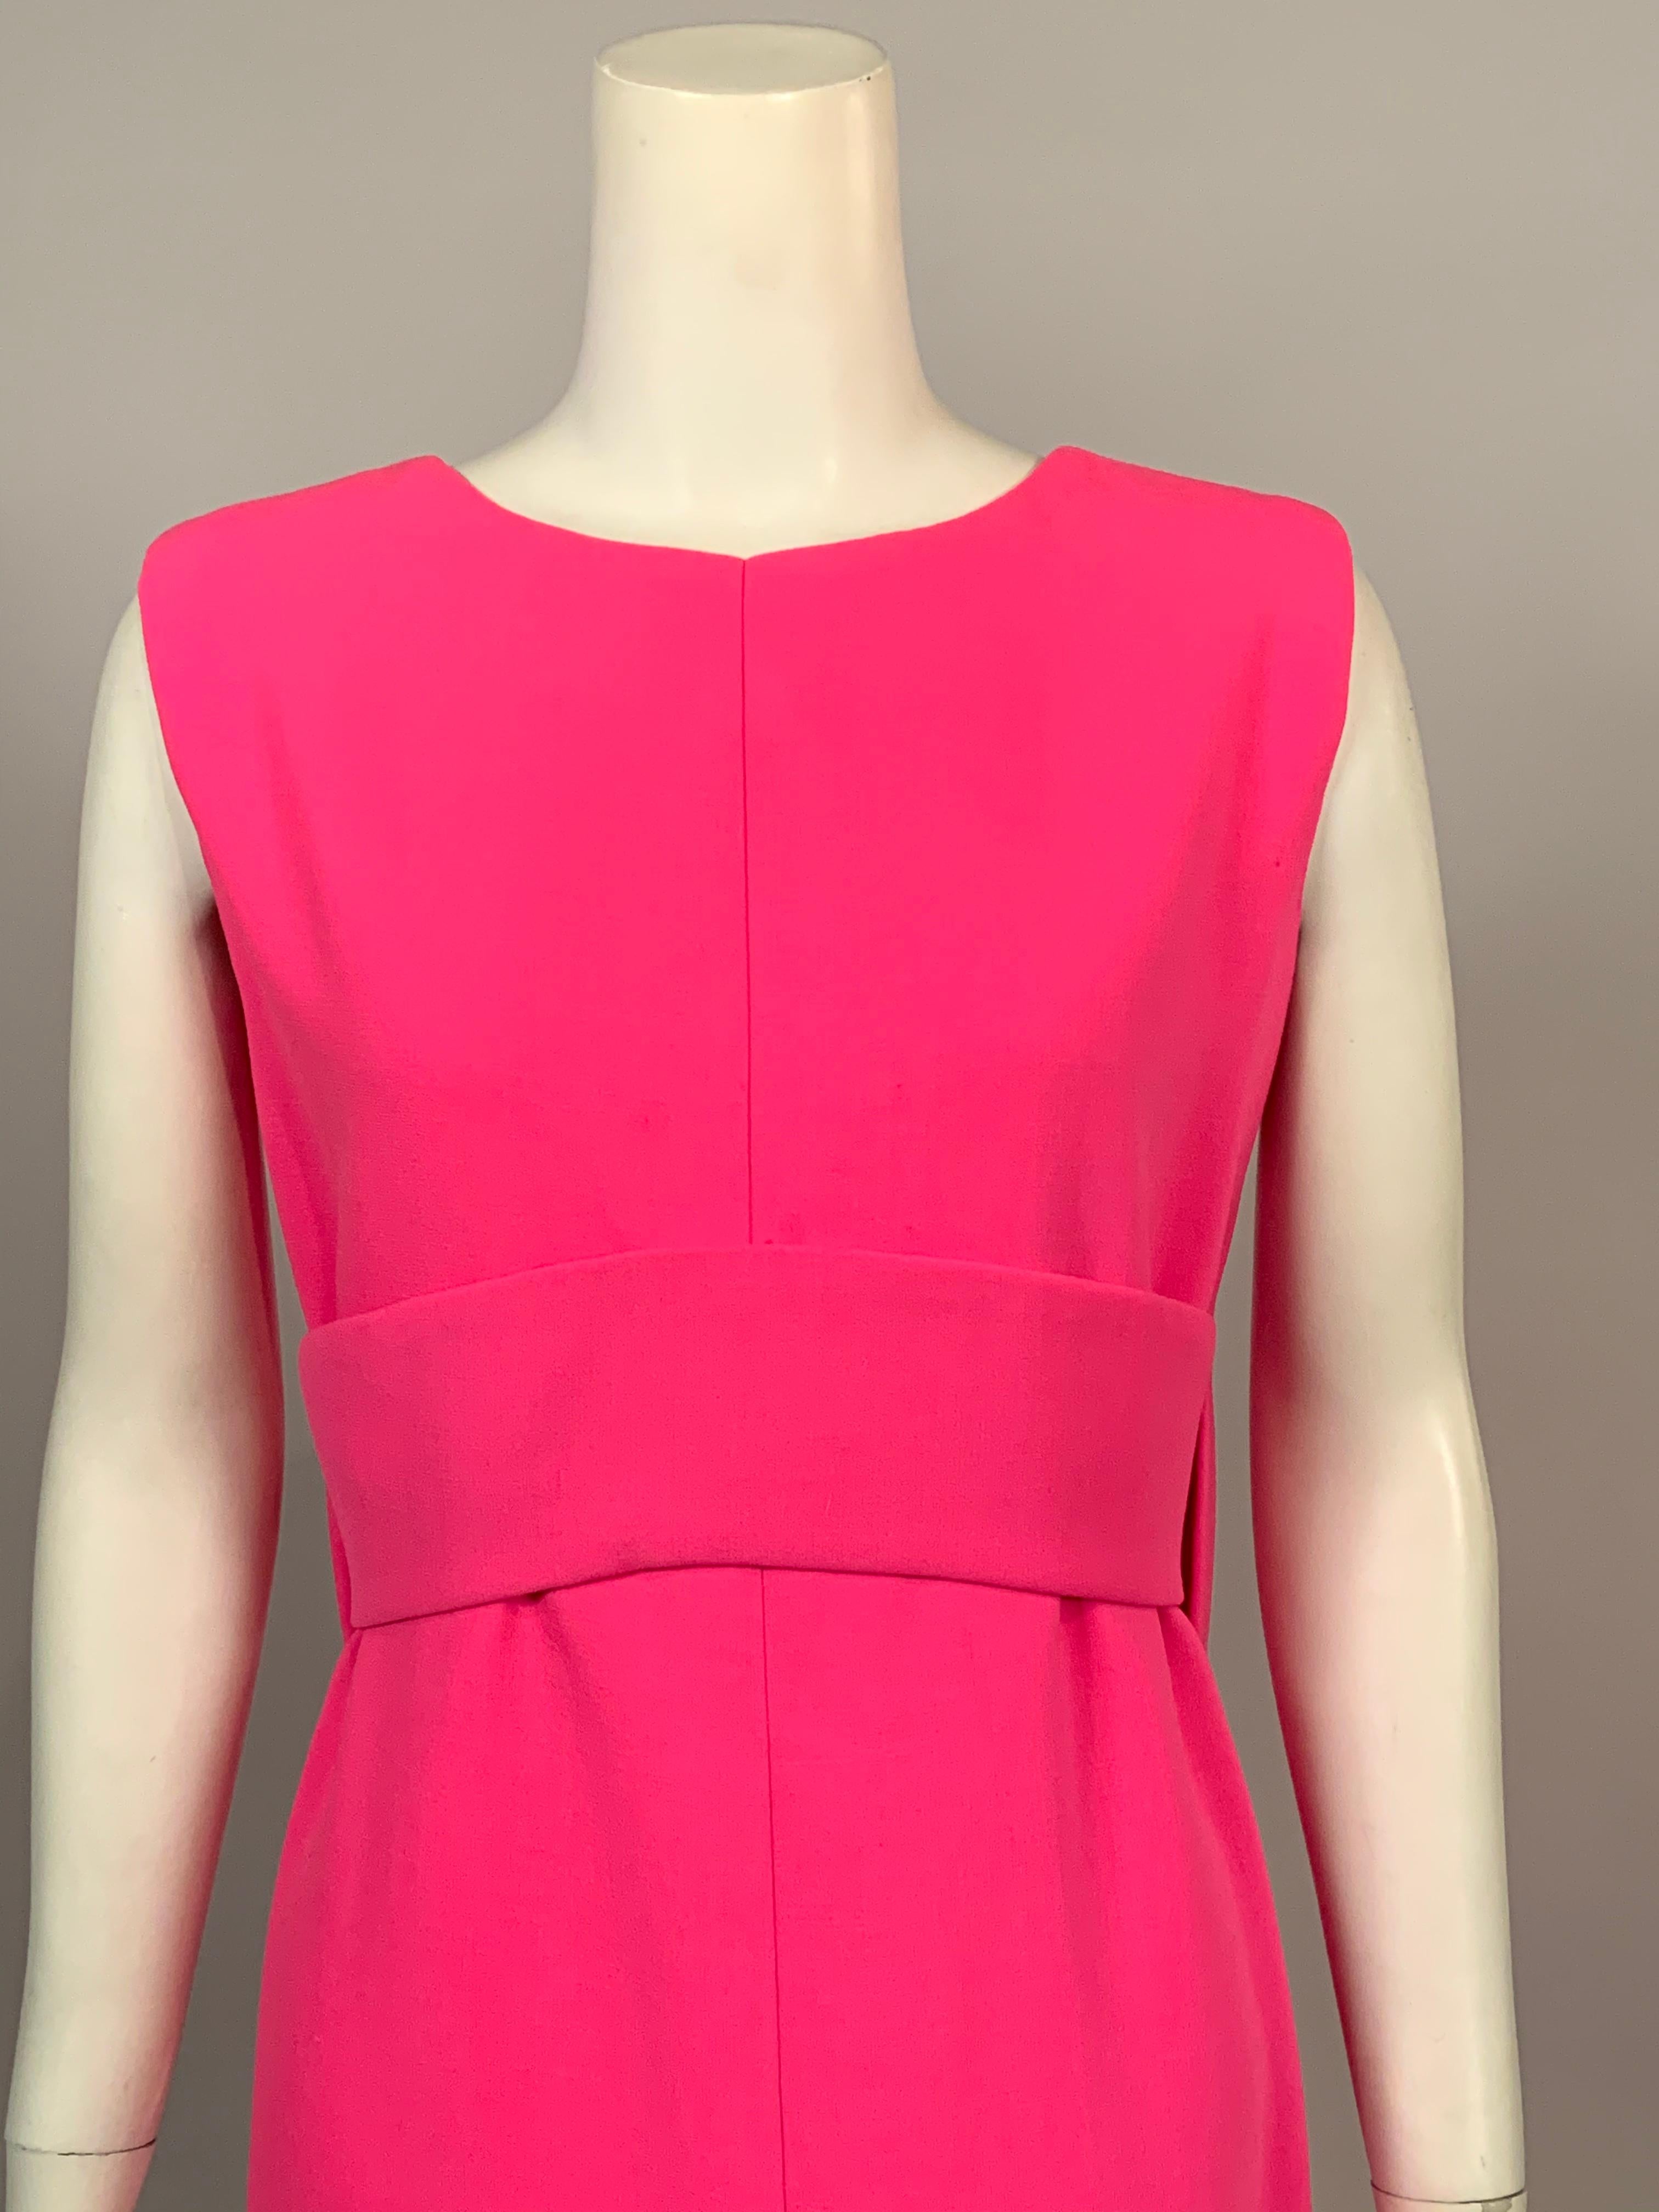 Dieses klassische:: leuchtend rosafarbene Abendkleid aus Wollkrepp von Norman Norell ist heute noch genauso stilvoll wie in den 1960er Jahren:: und es ist die perfekte Kulisse für Ihren Lieblingsschmuck. Das ärmellose Kleid hat einen runden